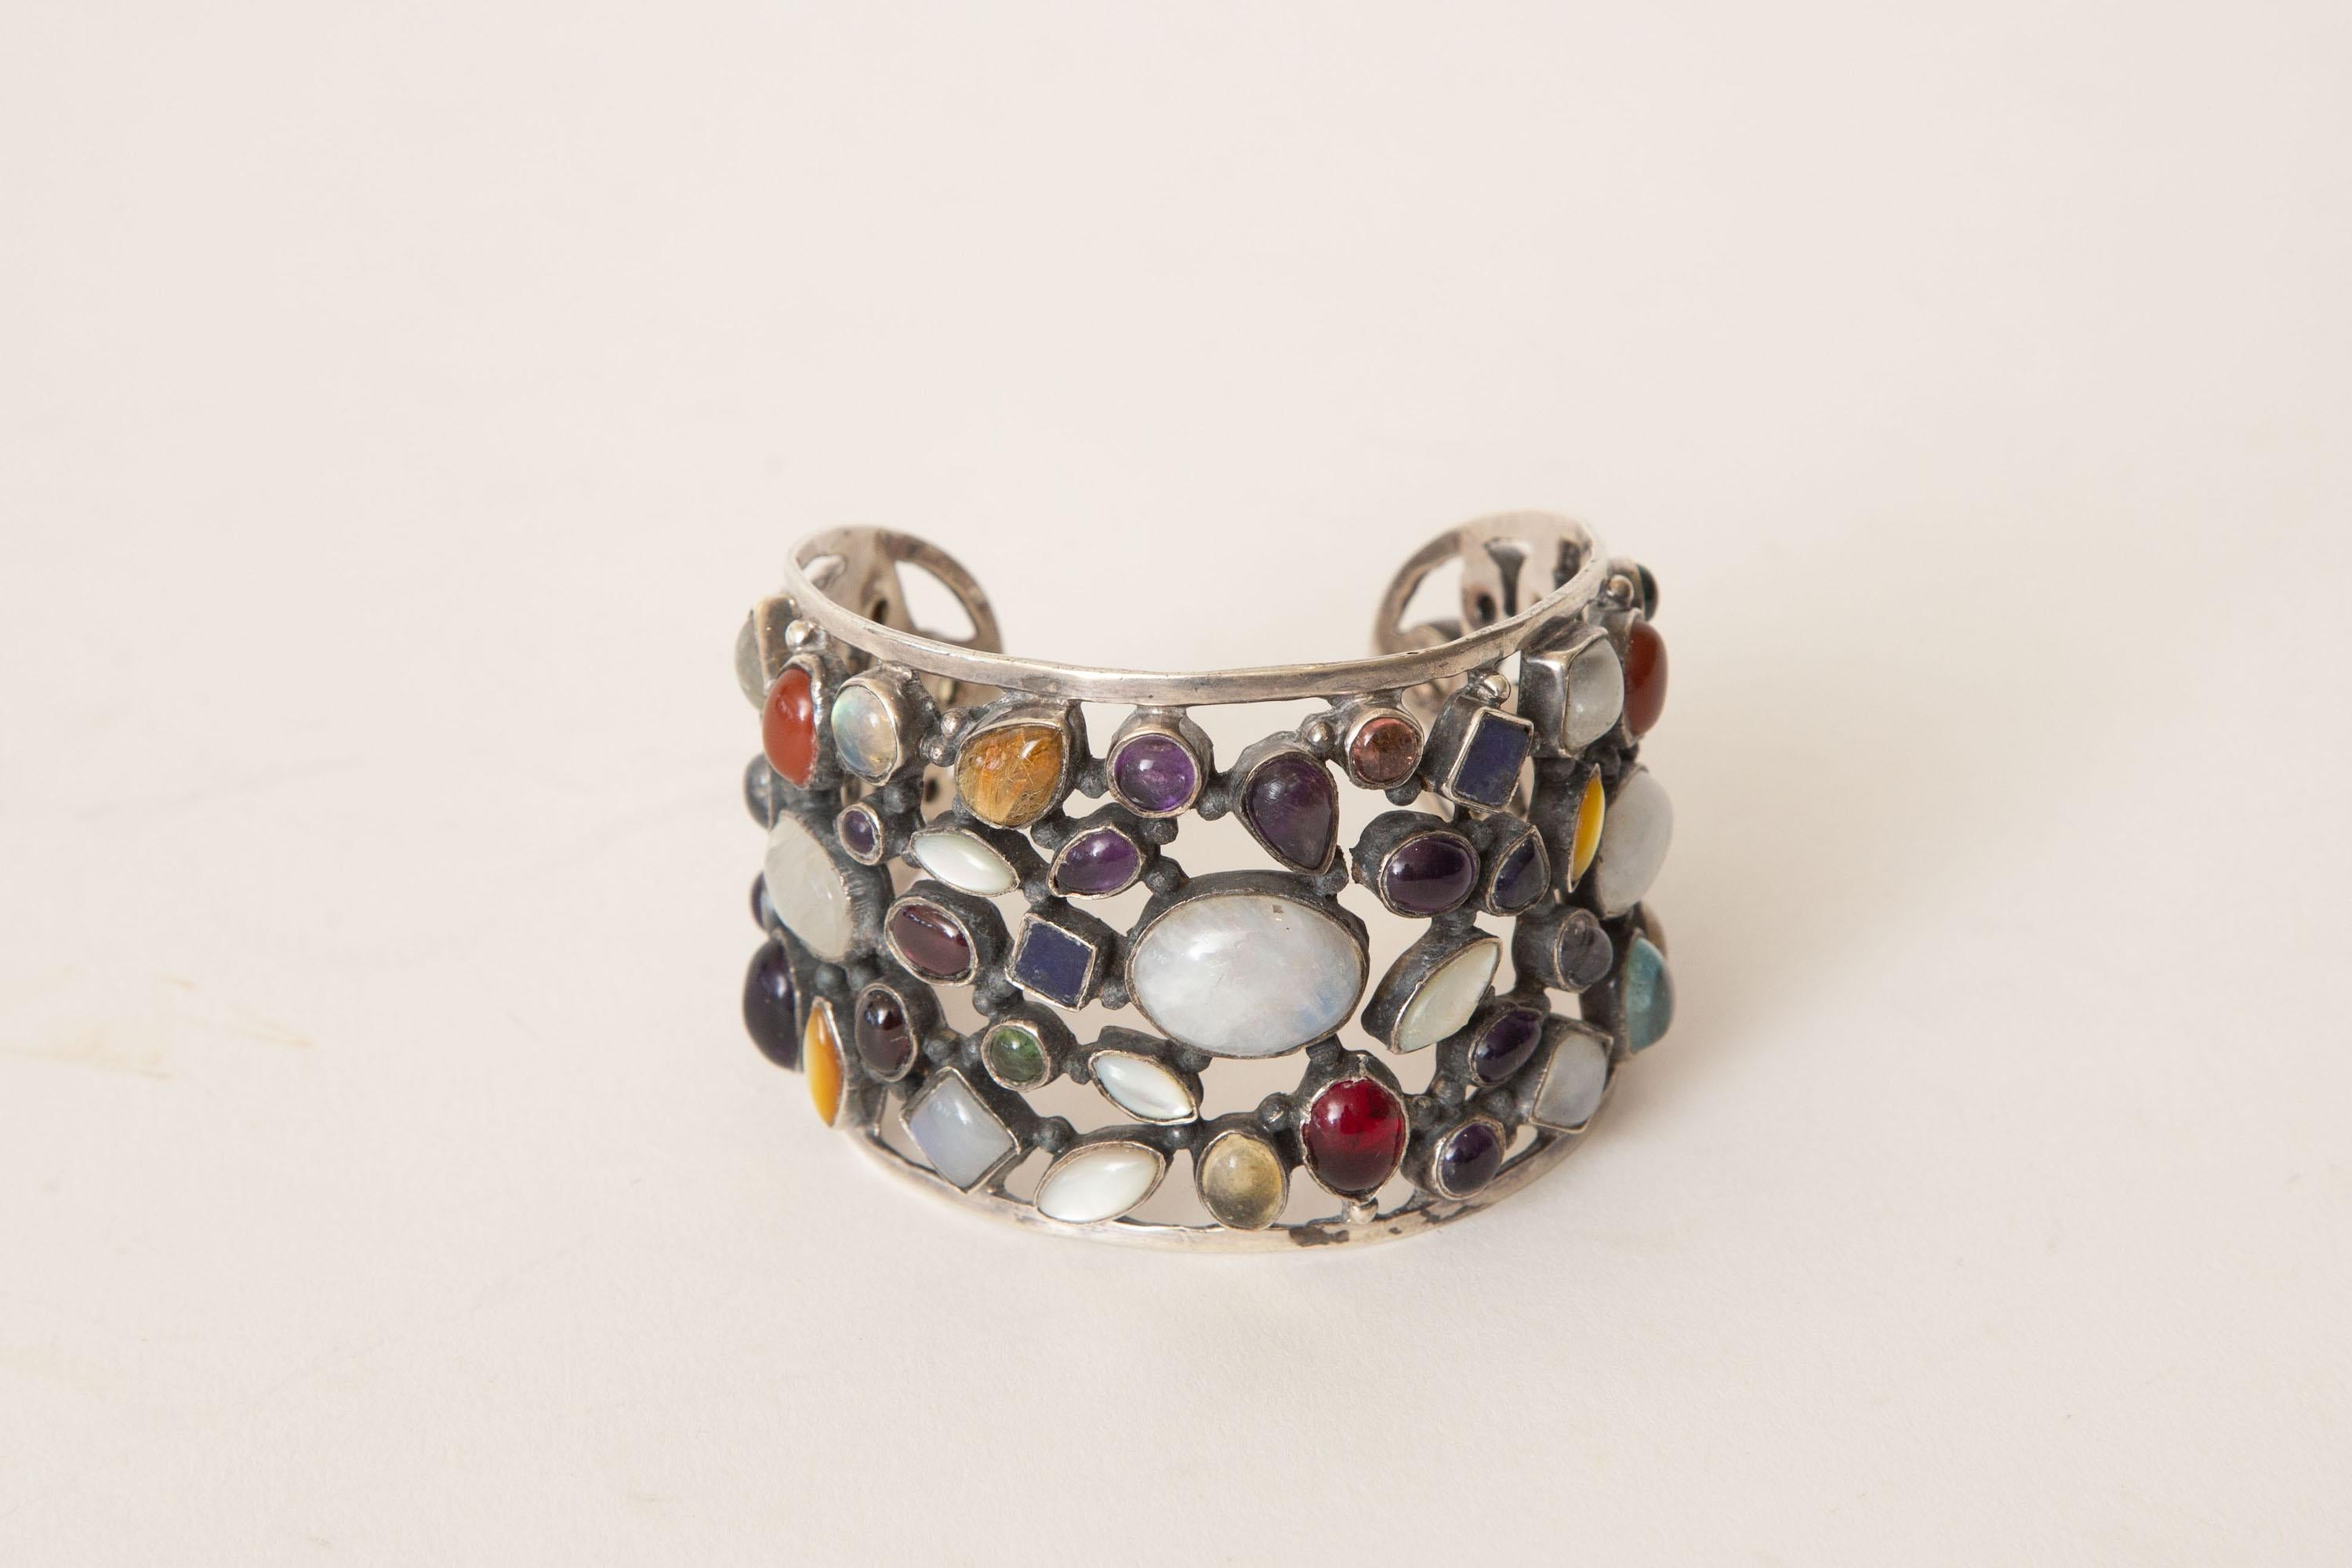 Ce superbe bracelet manchette, entièrement travaillé à la main, est une magnifique combinaison de pierres semi-précieuses de différentes formes et couleurs, serties sur un filigrane d'argent sterling. L'opale, le grenat et l'améthyste ne sont que